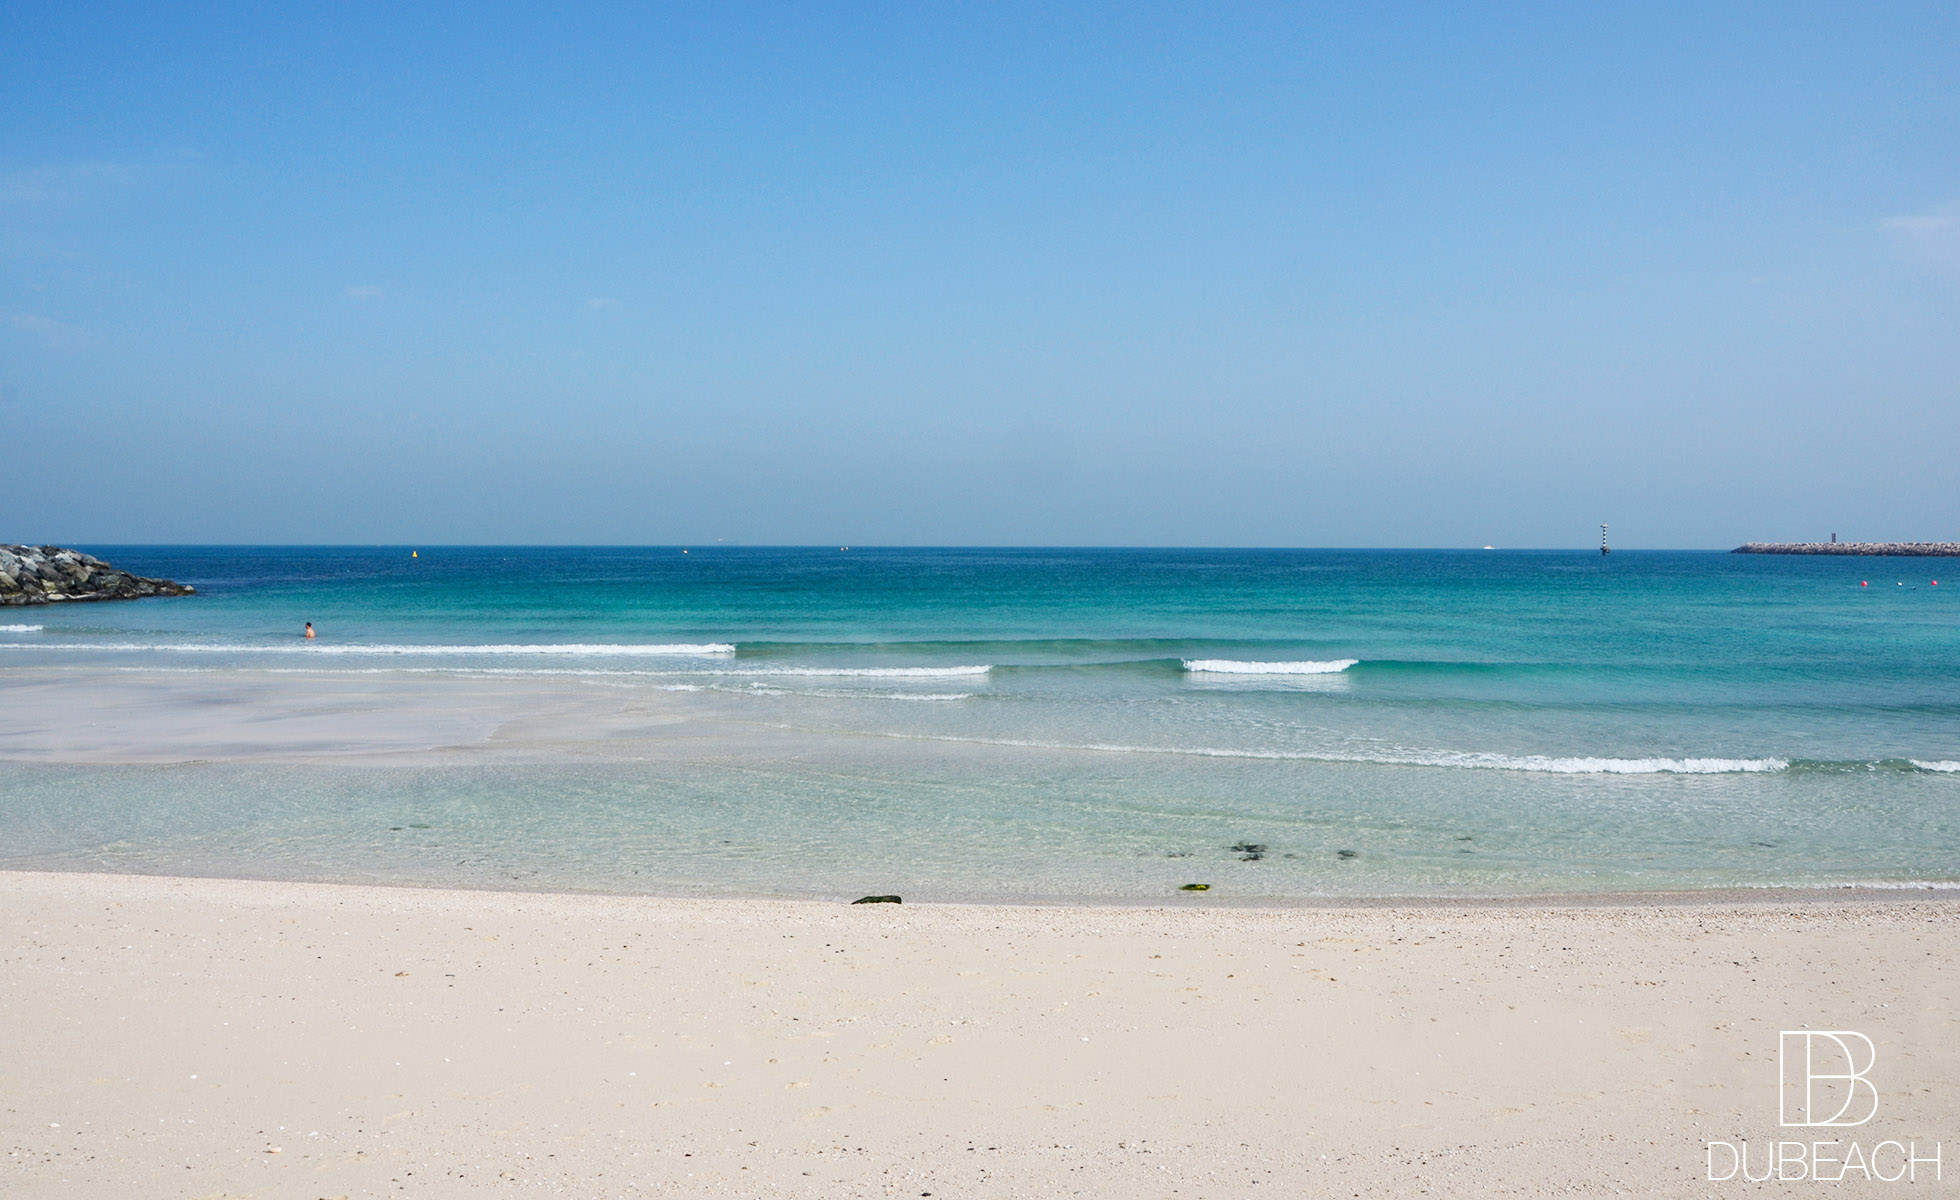 North Beach - Pearl Jumeirah Dubai - Location, SUP, Surf